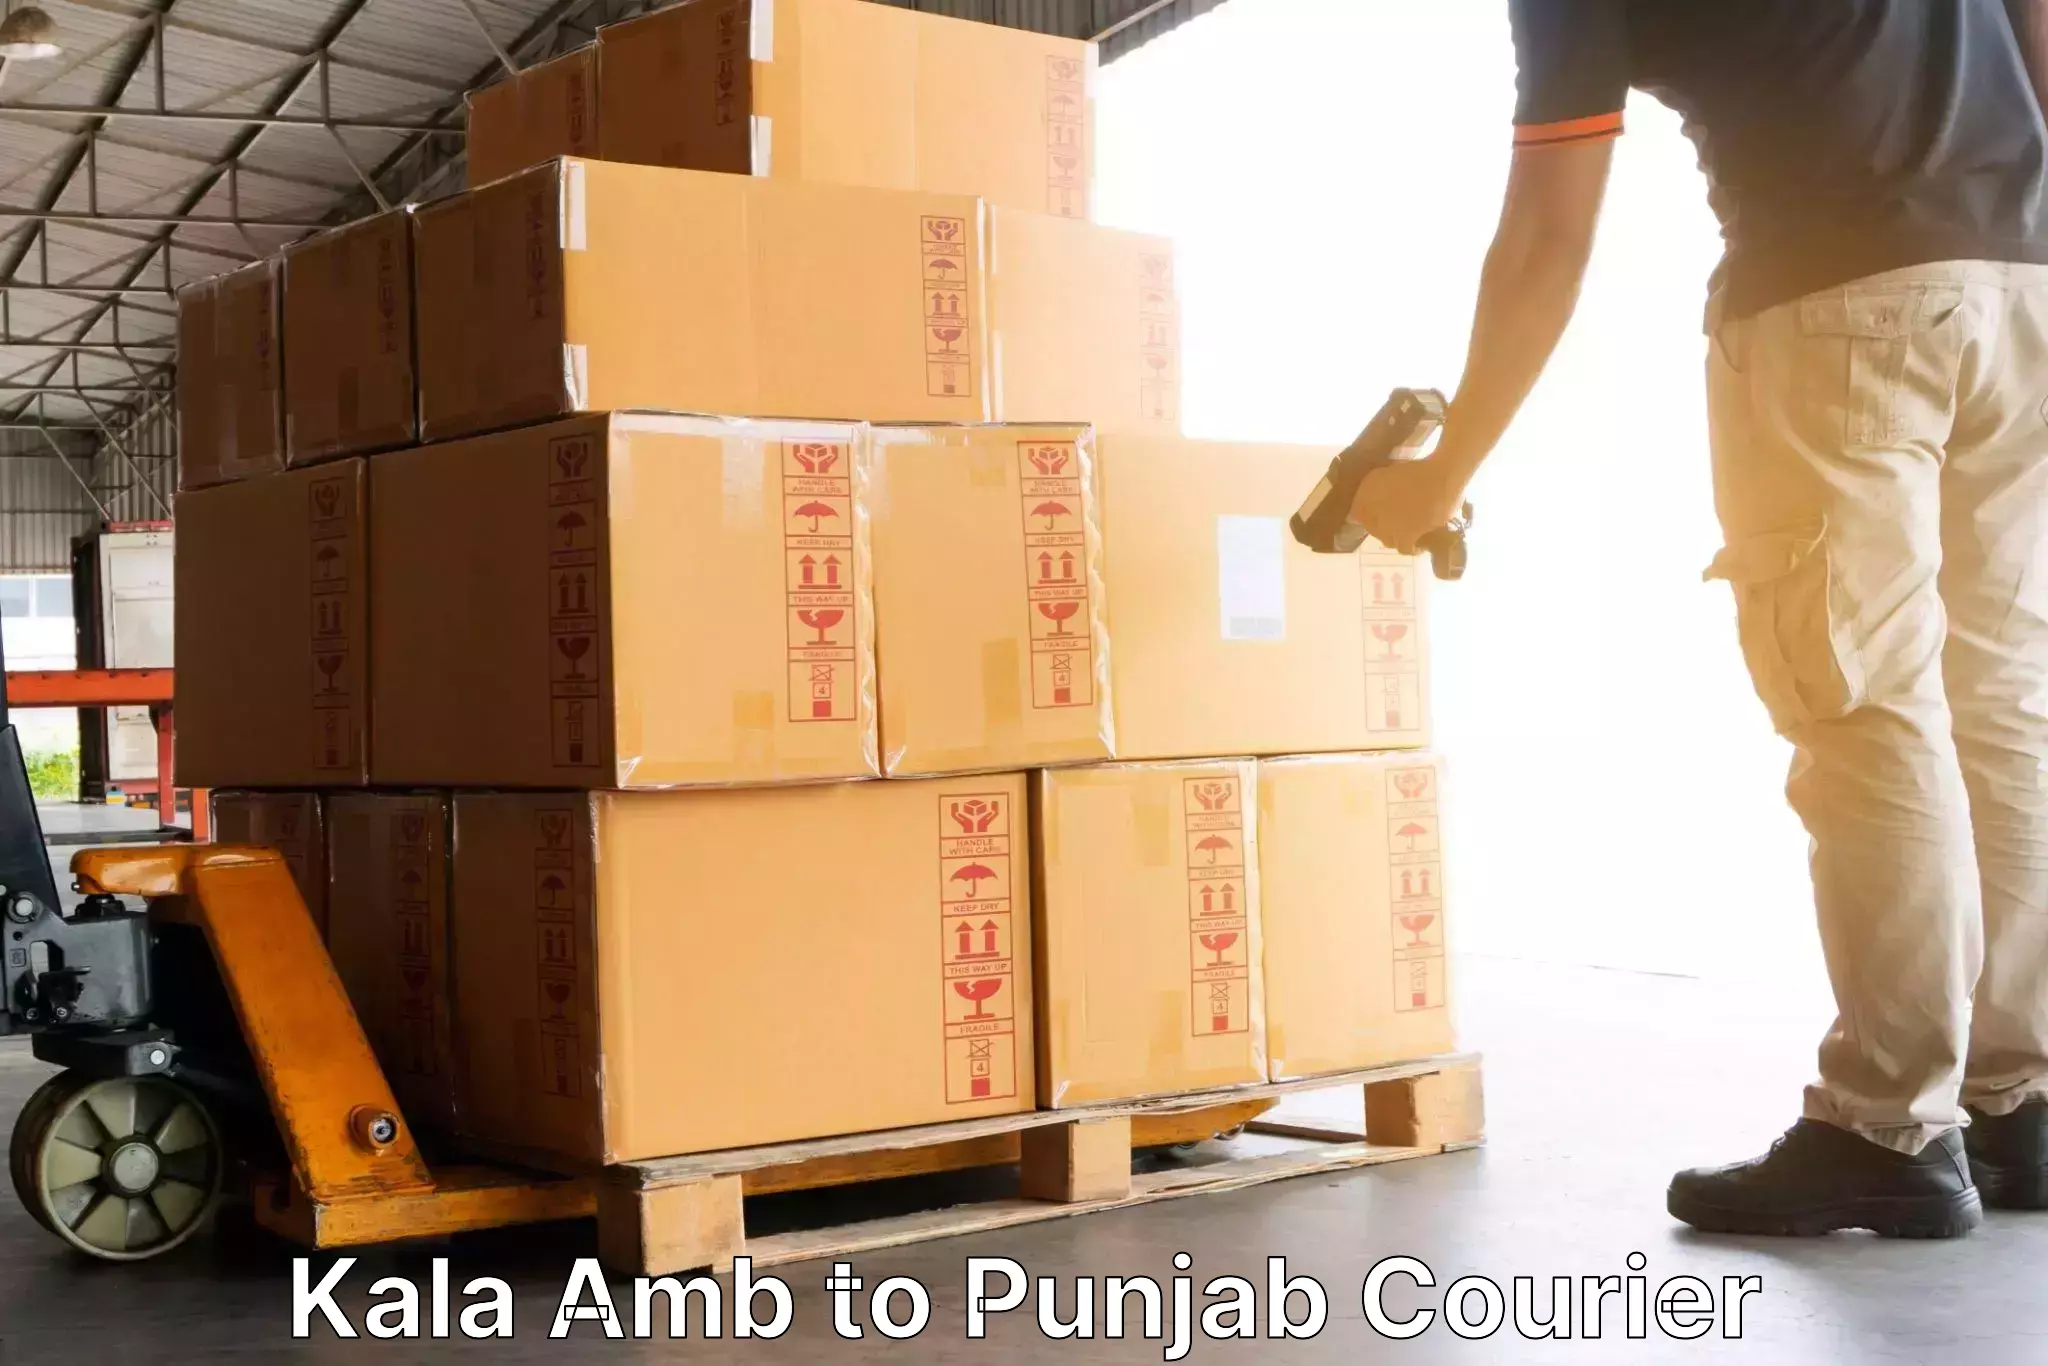 Global shipping networks Kala Amb to Nabha